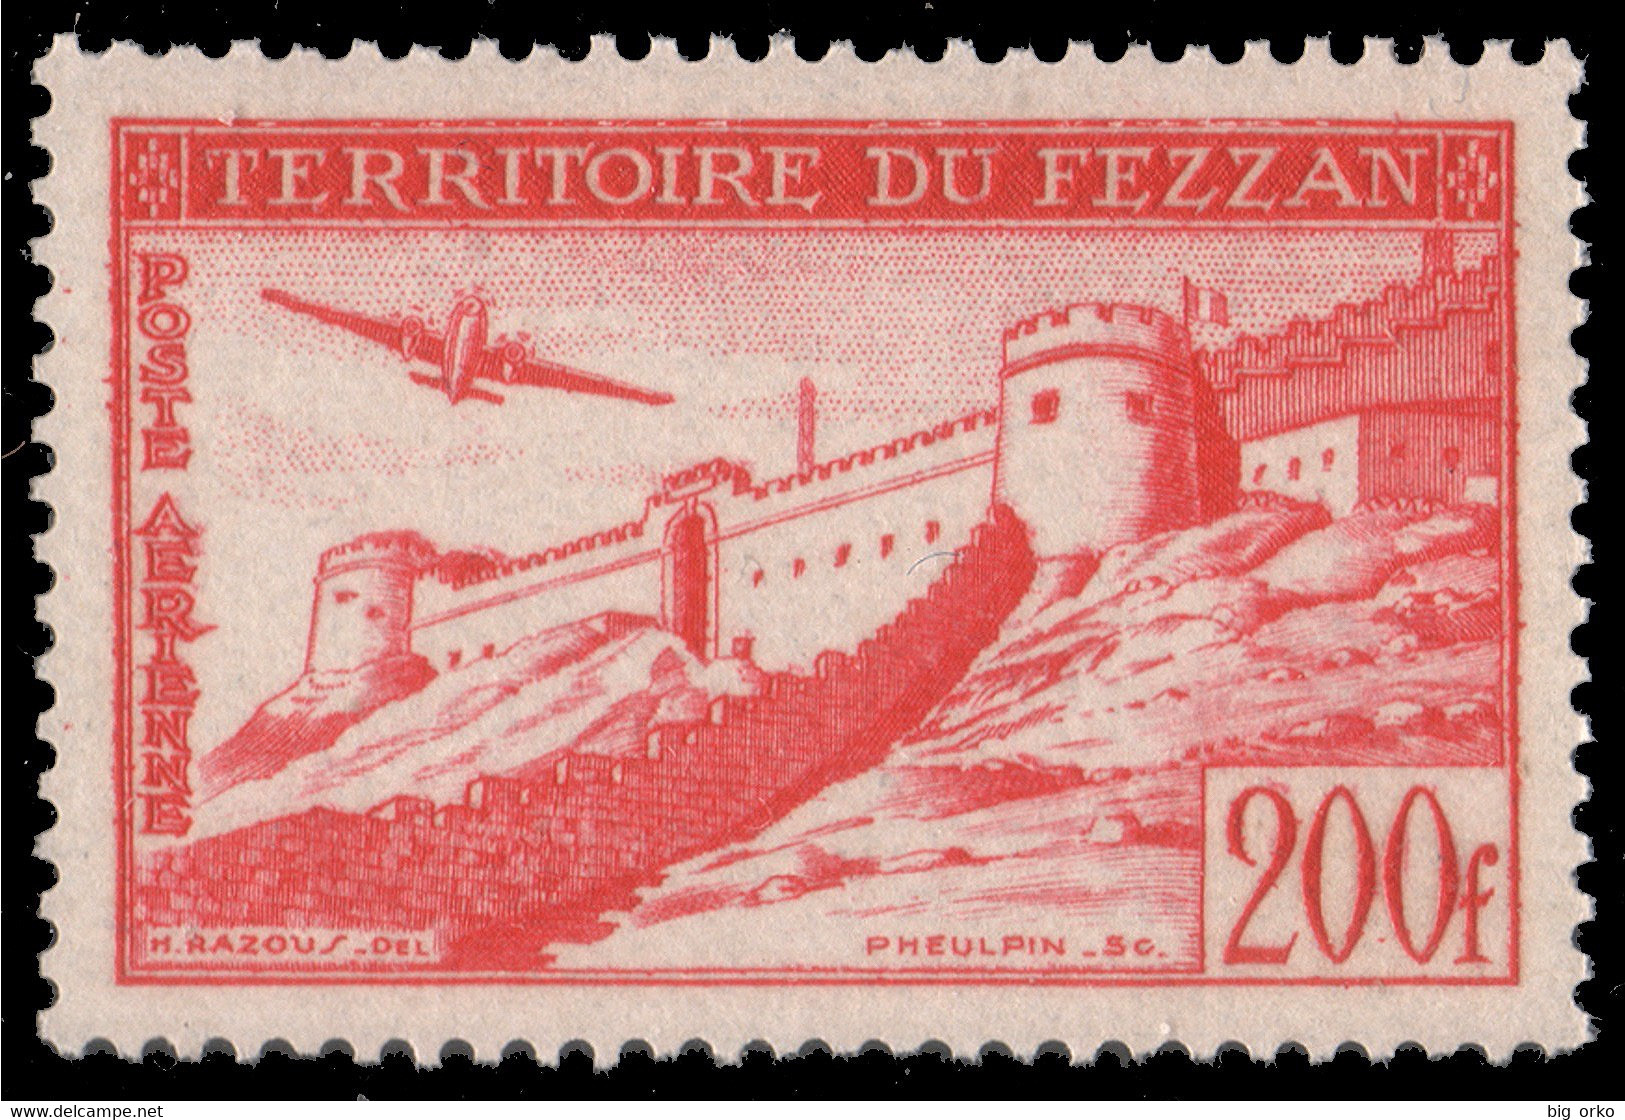 Occupazione Francese Fezzan / Territorio Militare - POSTA AEREA: 2a Emissione Per Il Fezzan 200 F. Rosso - 1951 - Unused Stamps